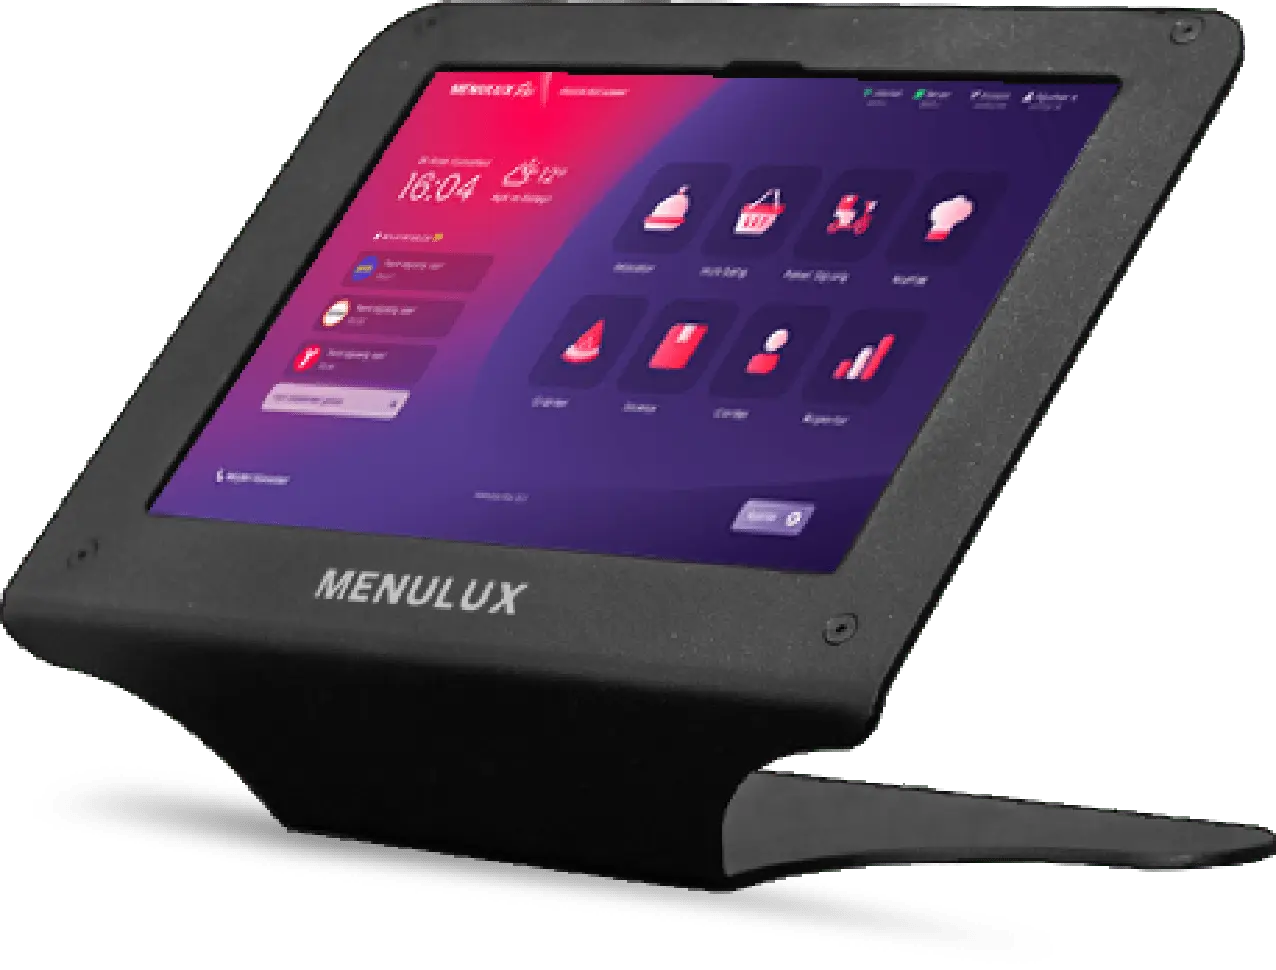 Menulux Restaurant Tablet Pos Devices